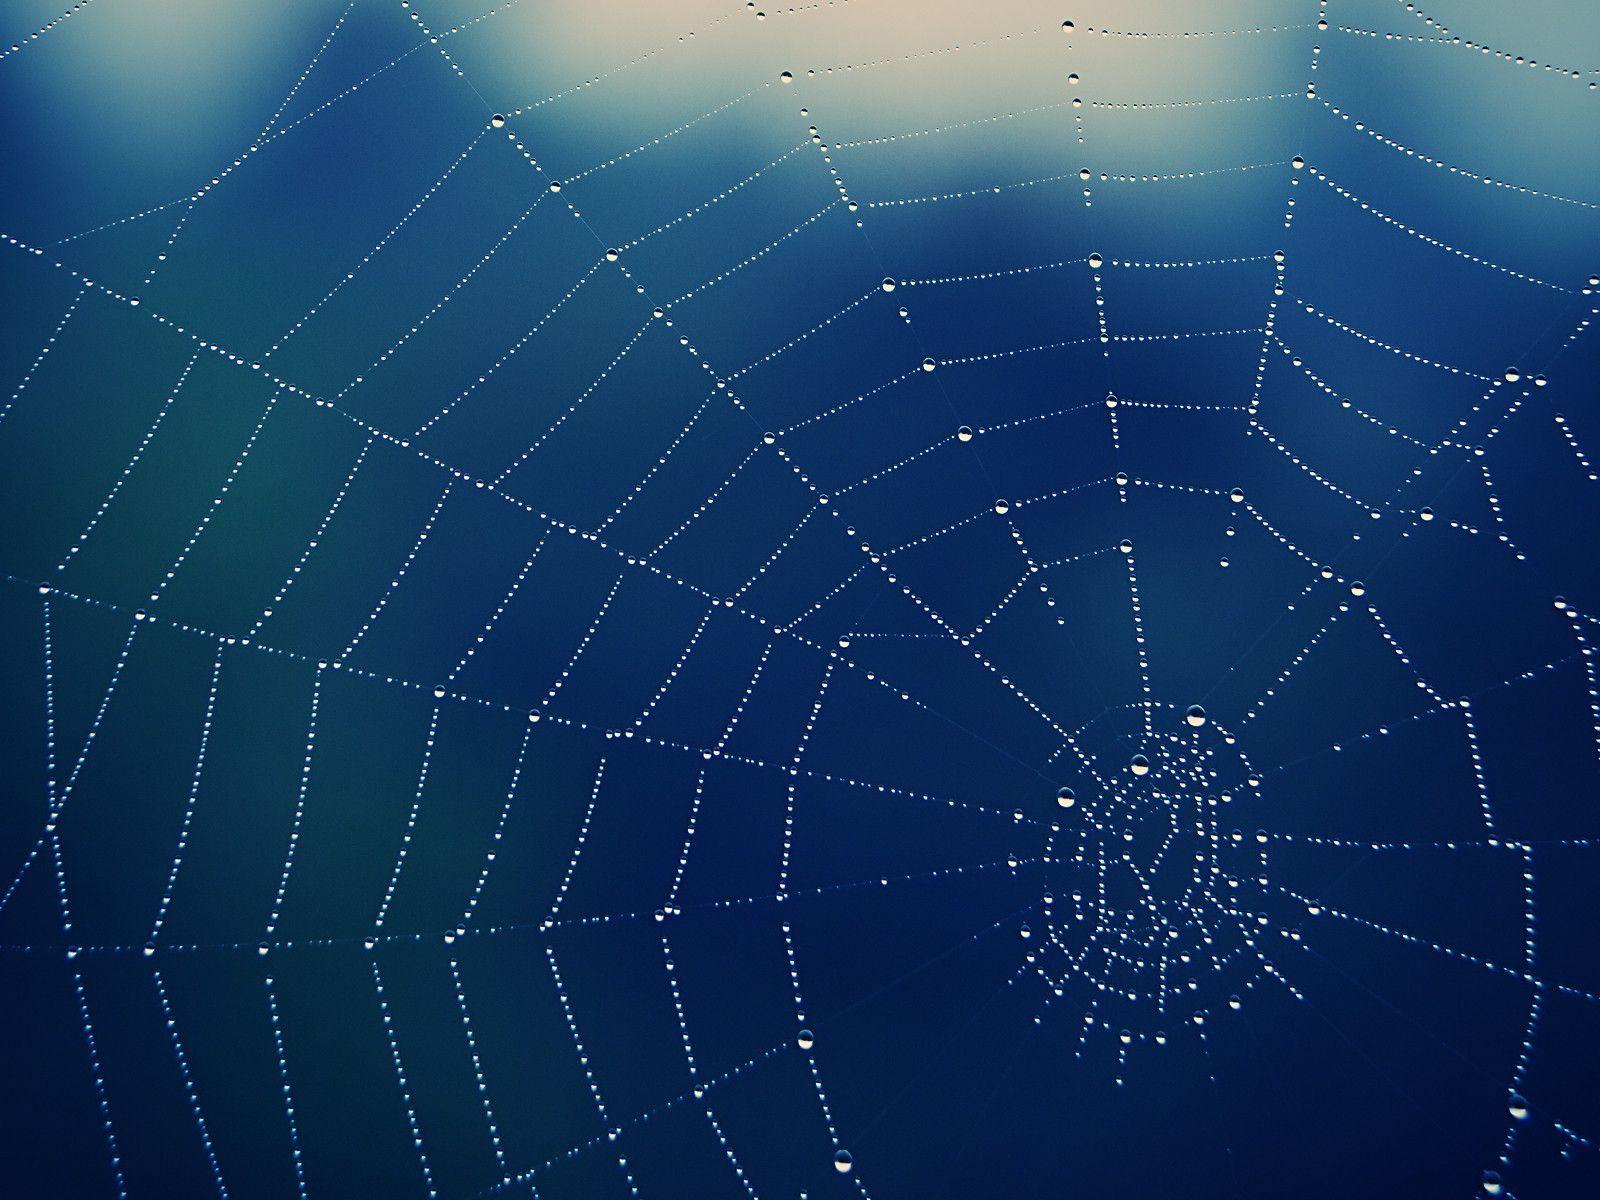 Spider Web Background